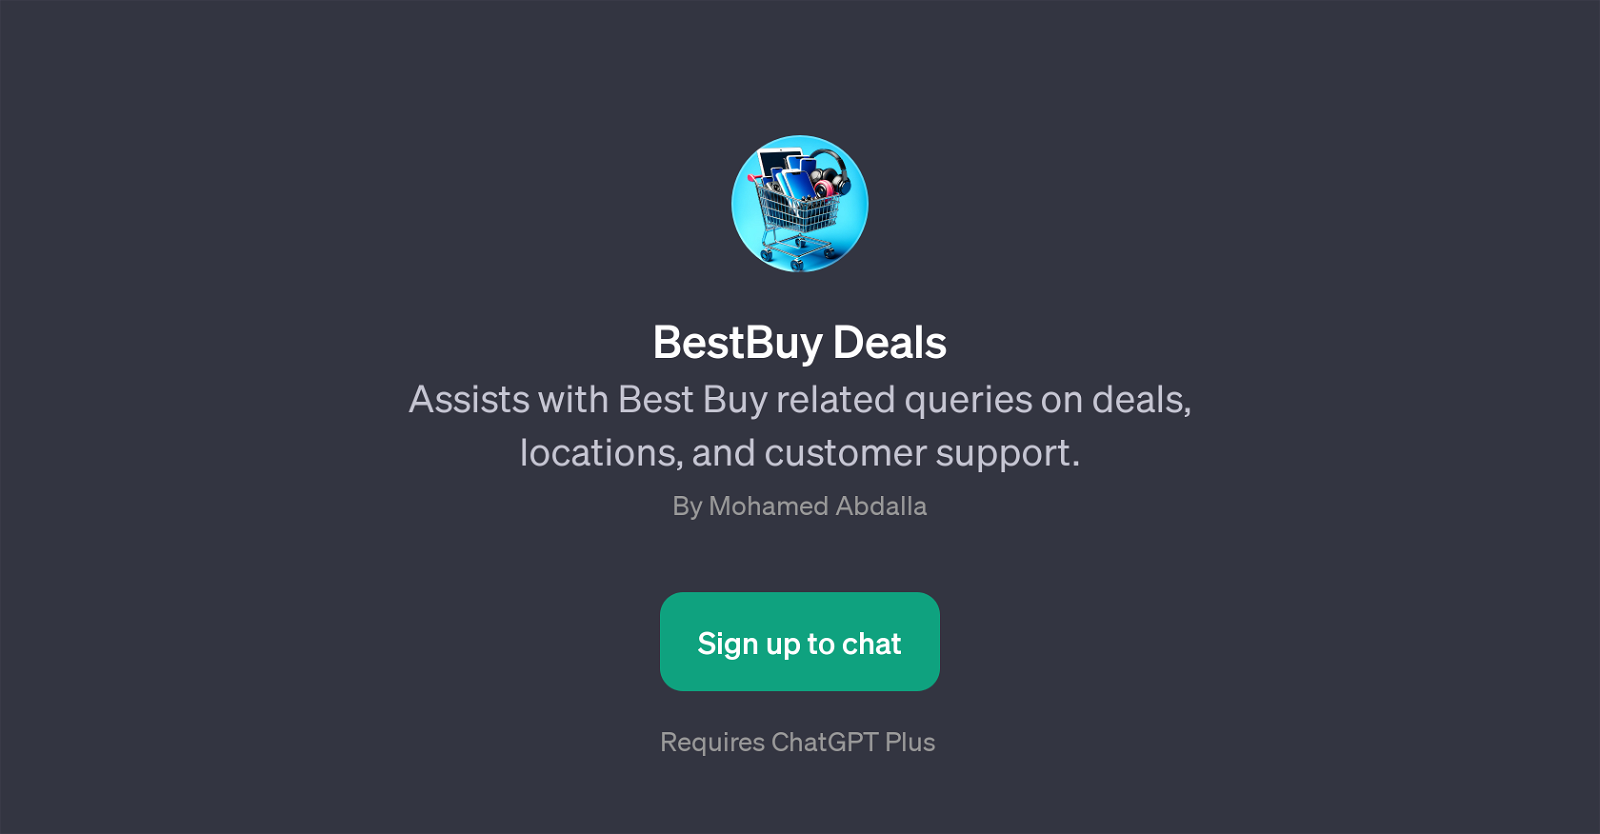 BestBuy Deals website